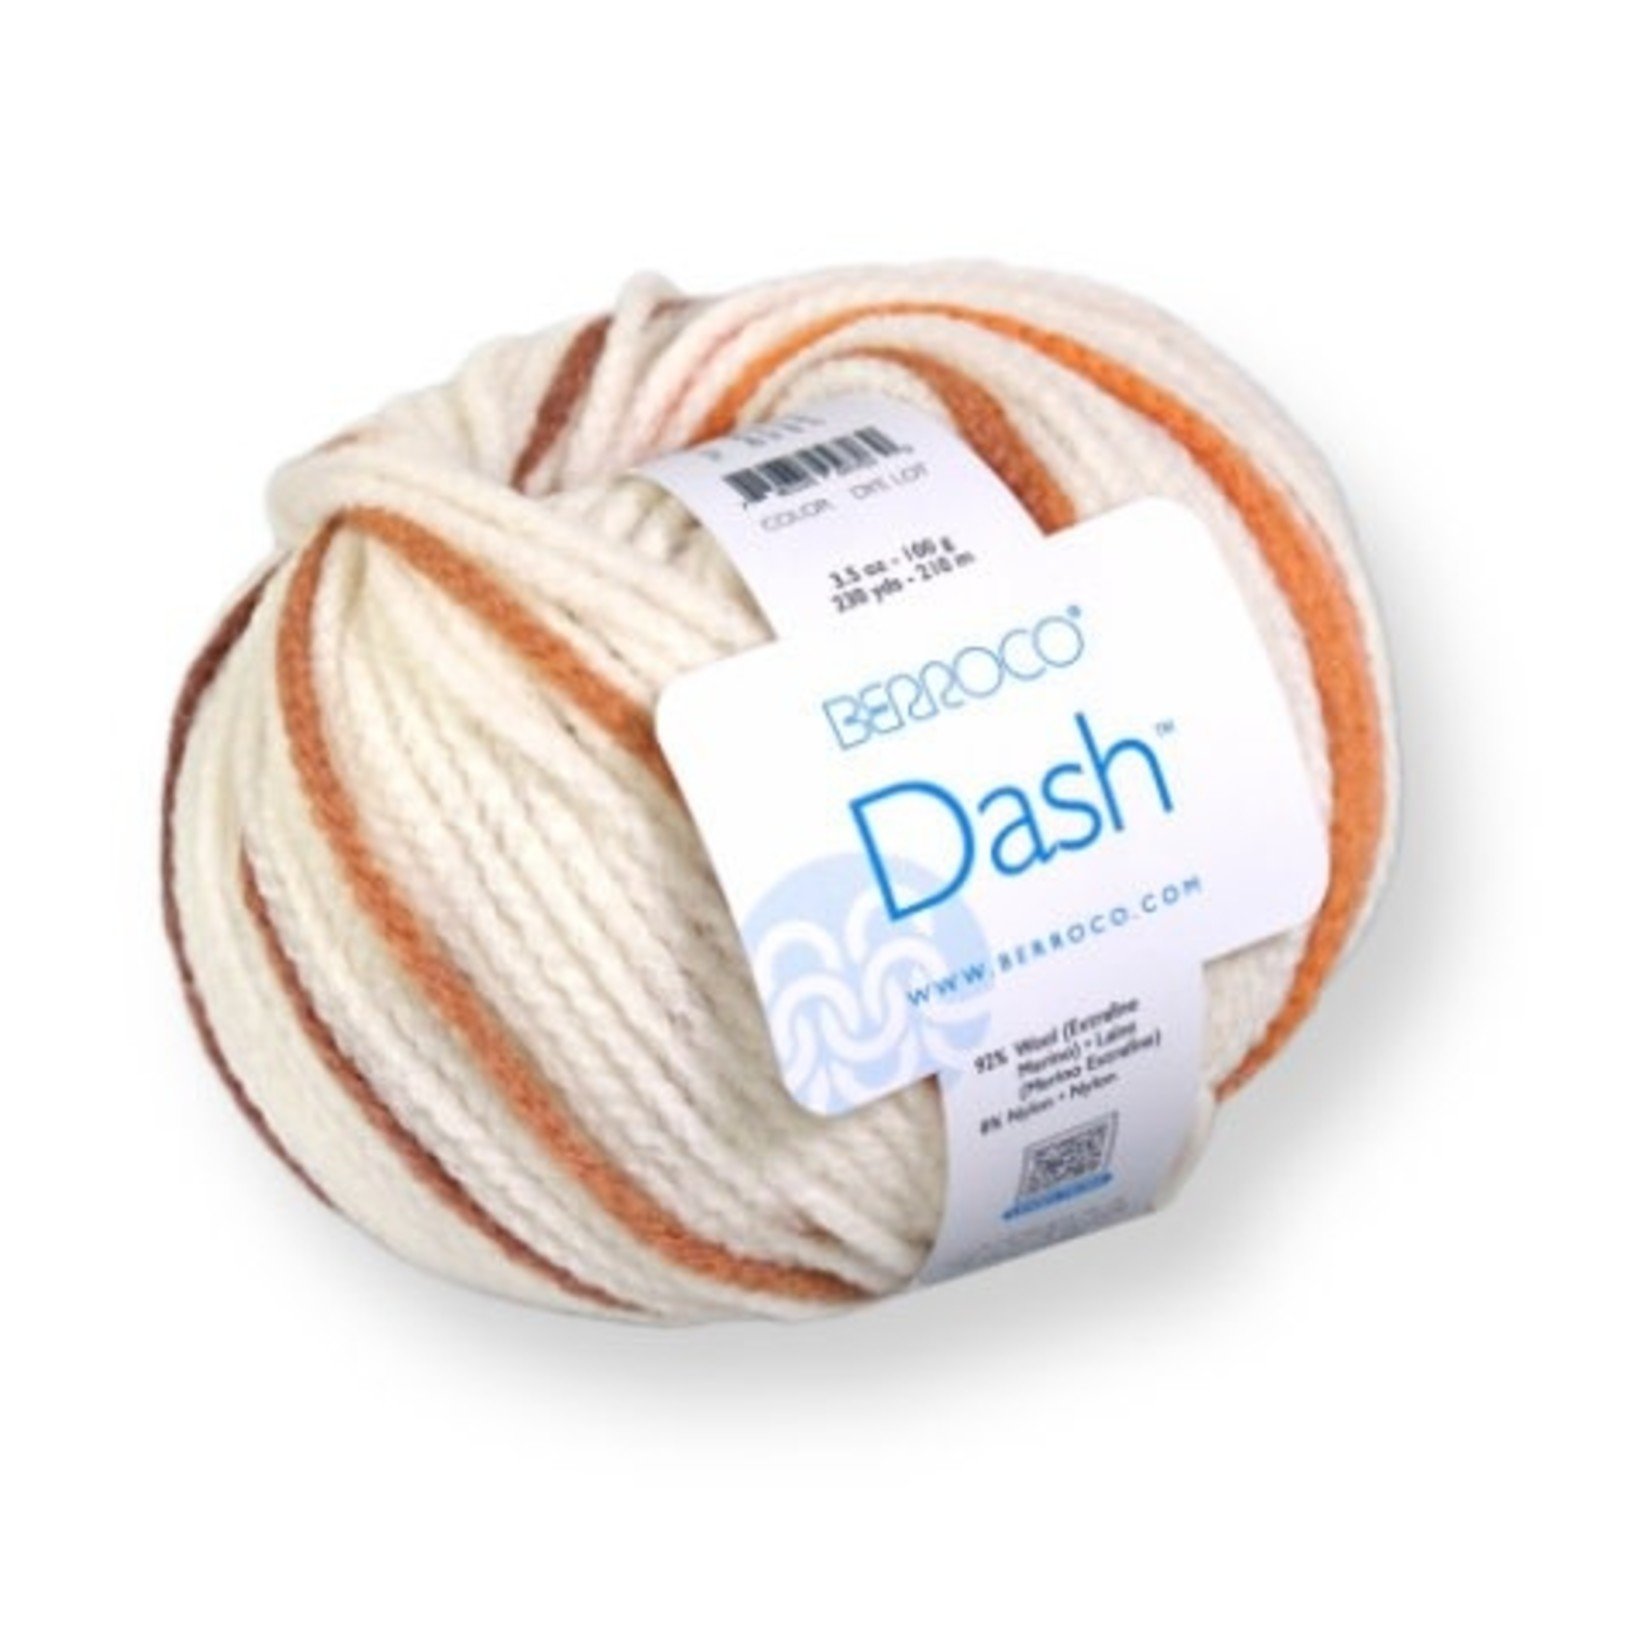 Berroco Dash Yarn